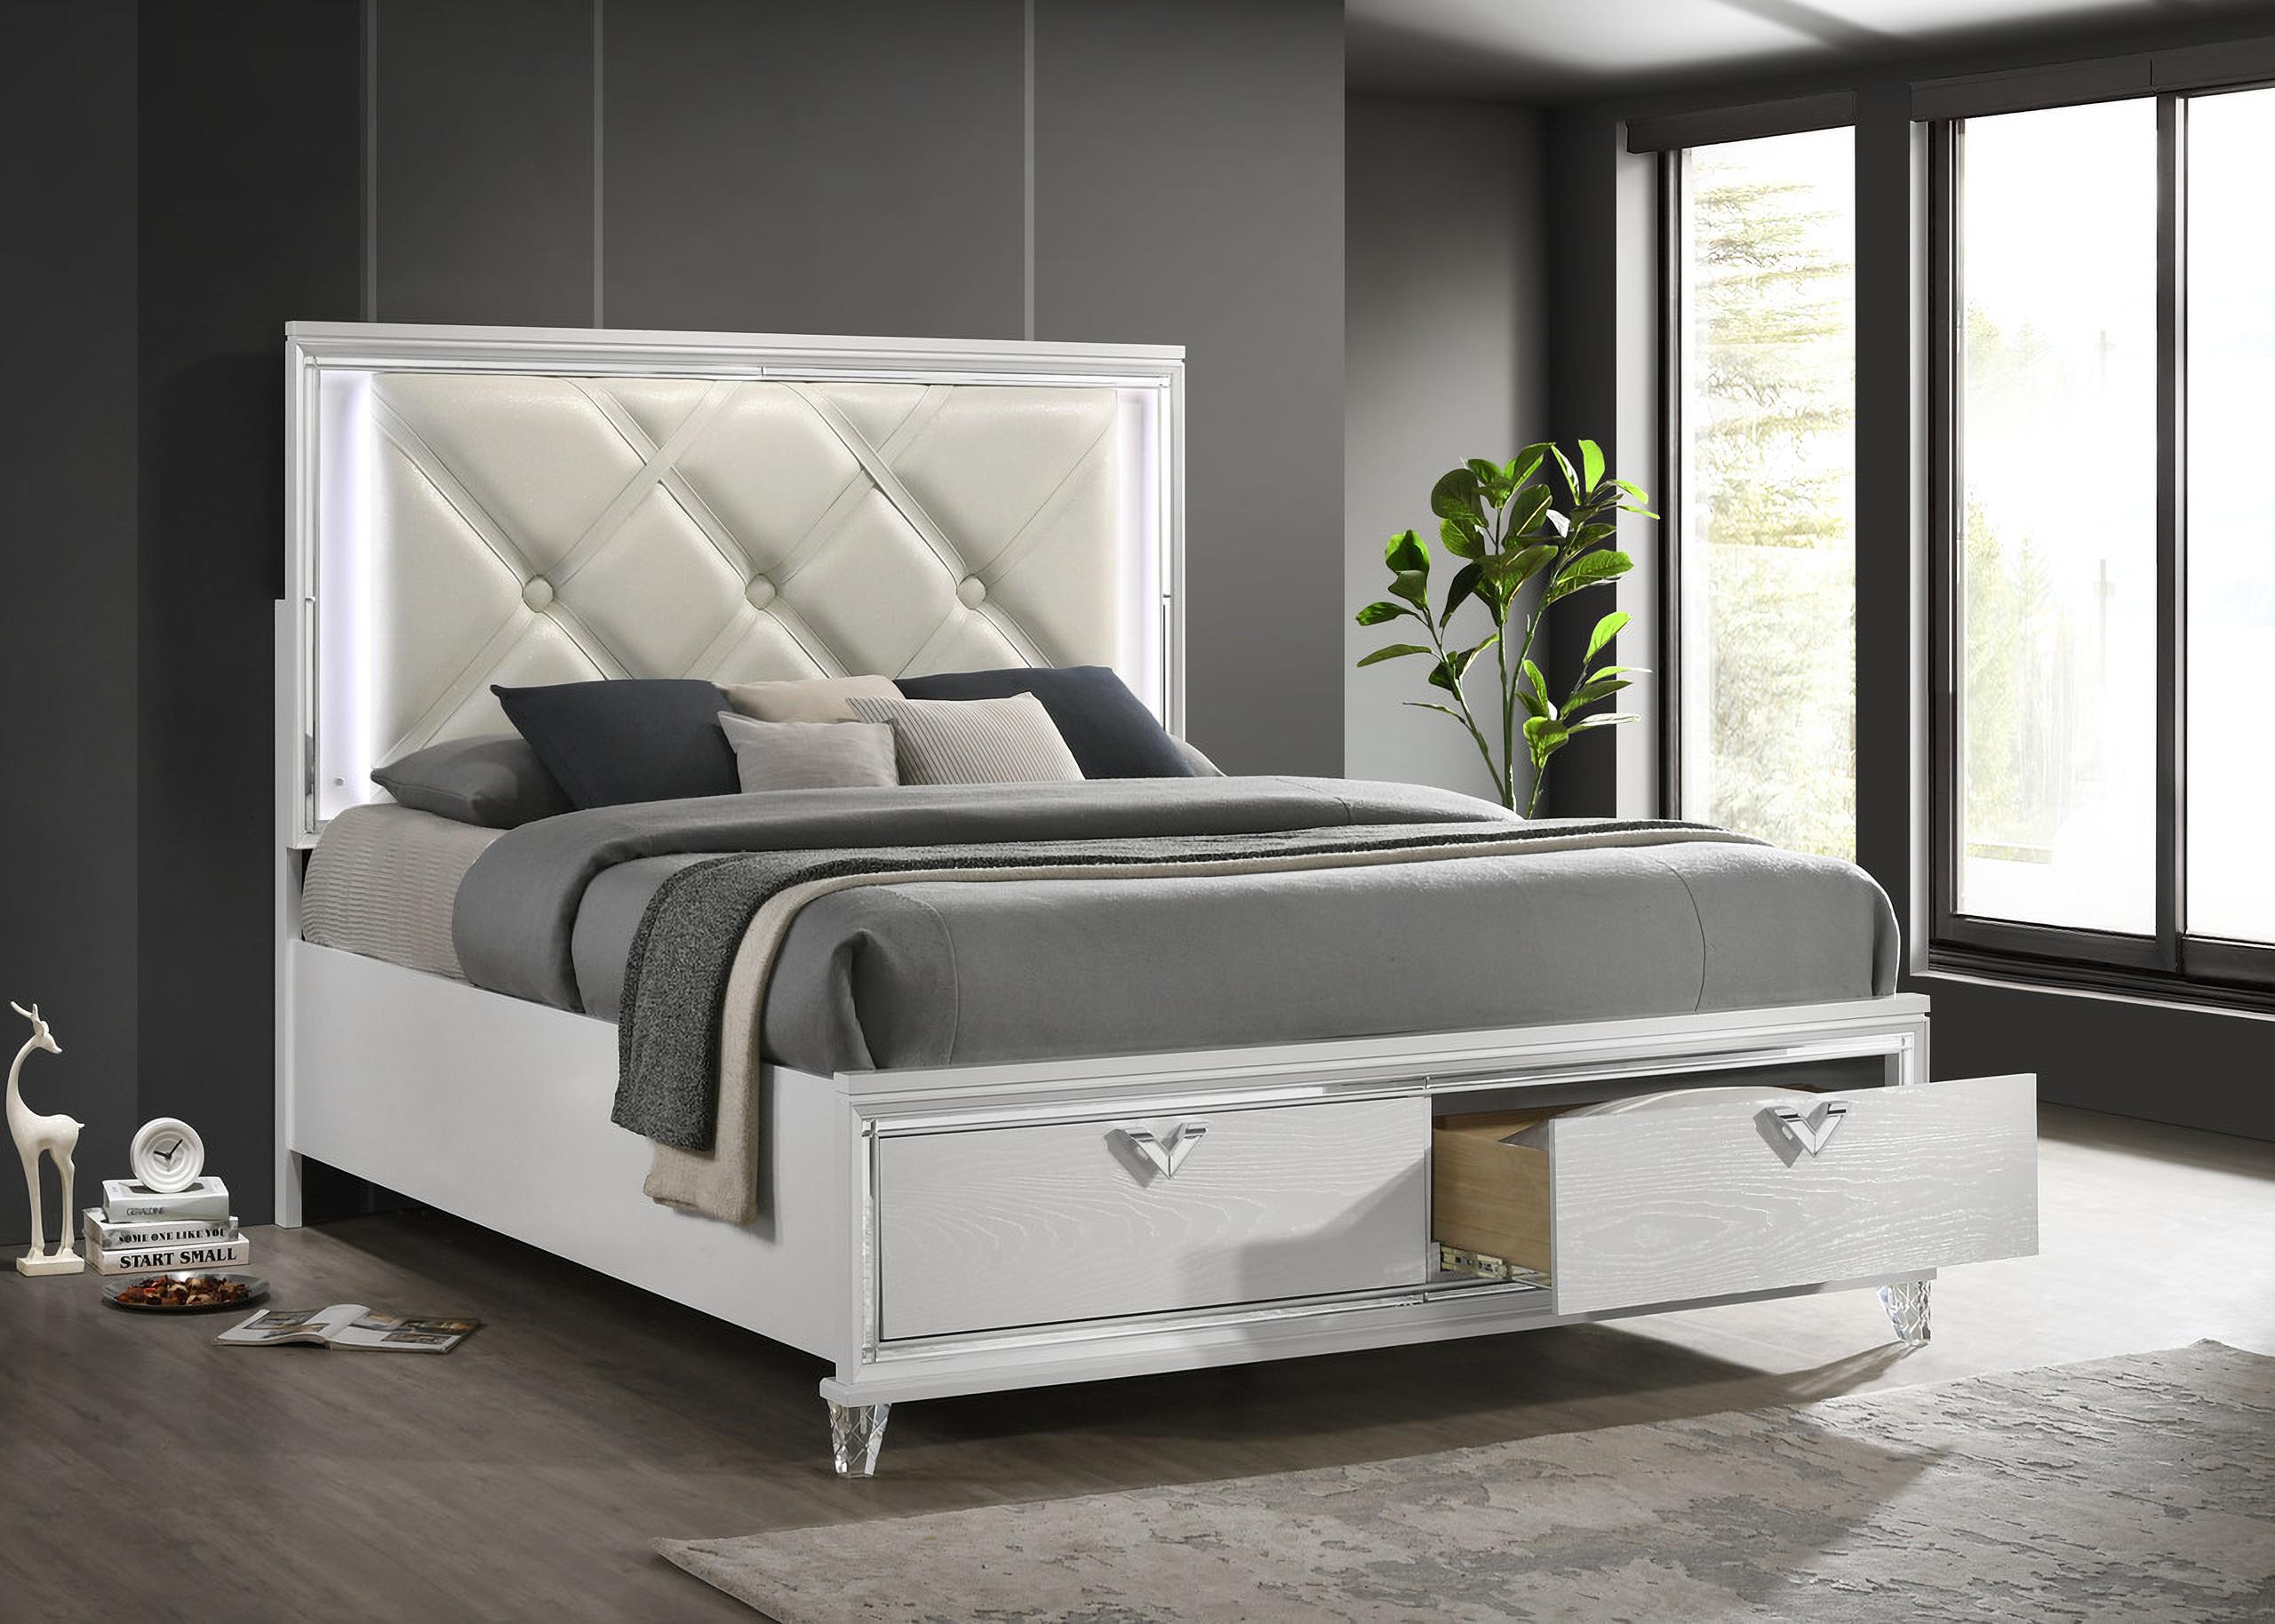 

    
Prism-EK-NDM-4PC Galaxy Home Furniture Storage Bedroom Set
